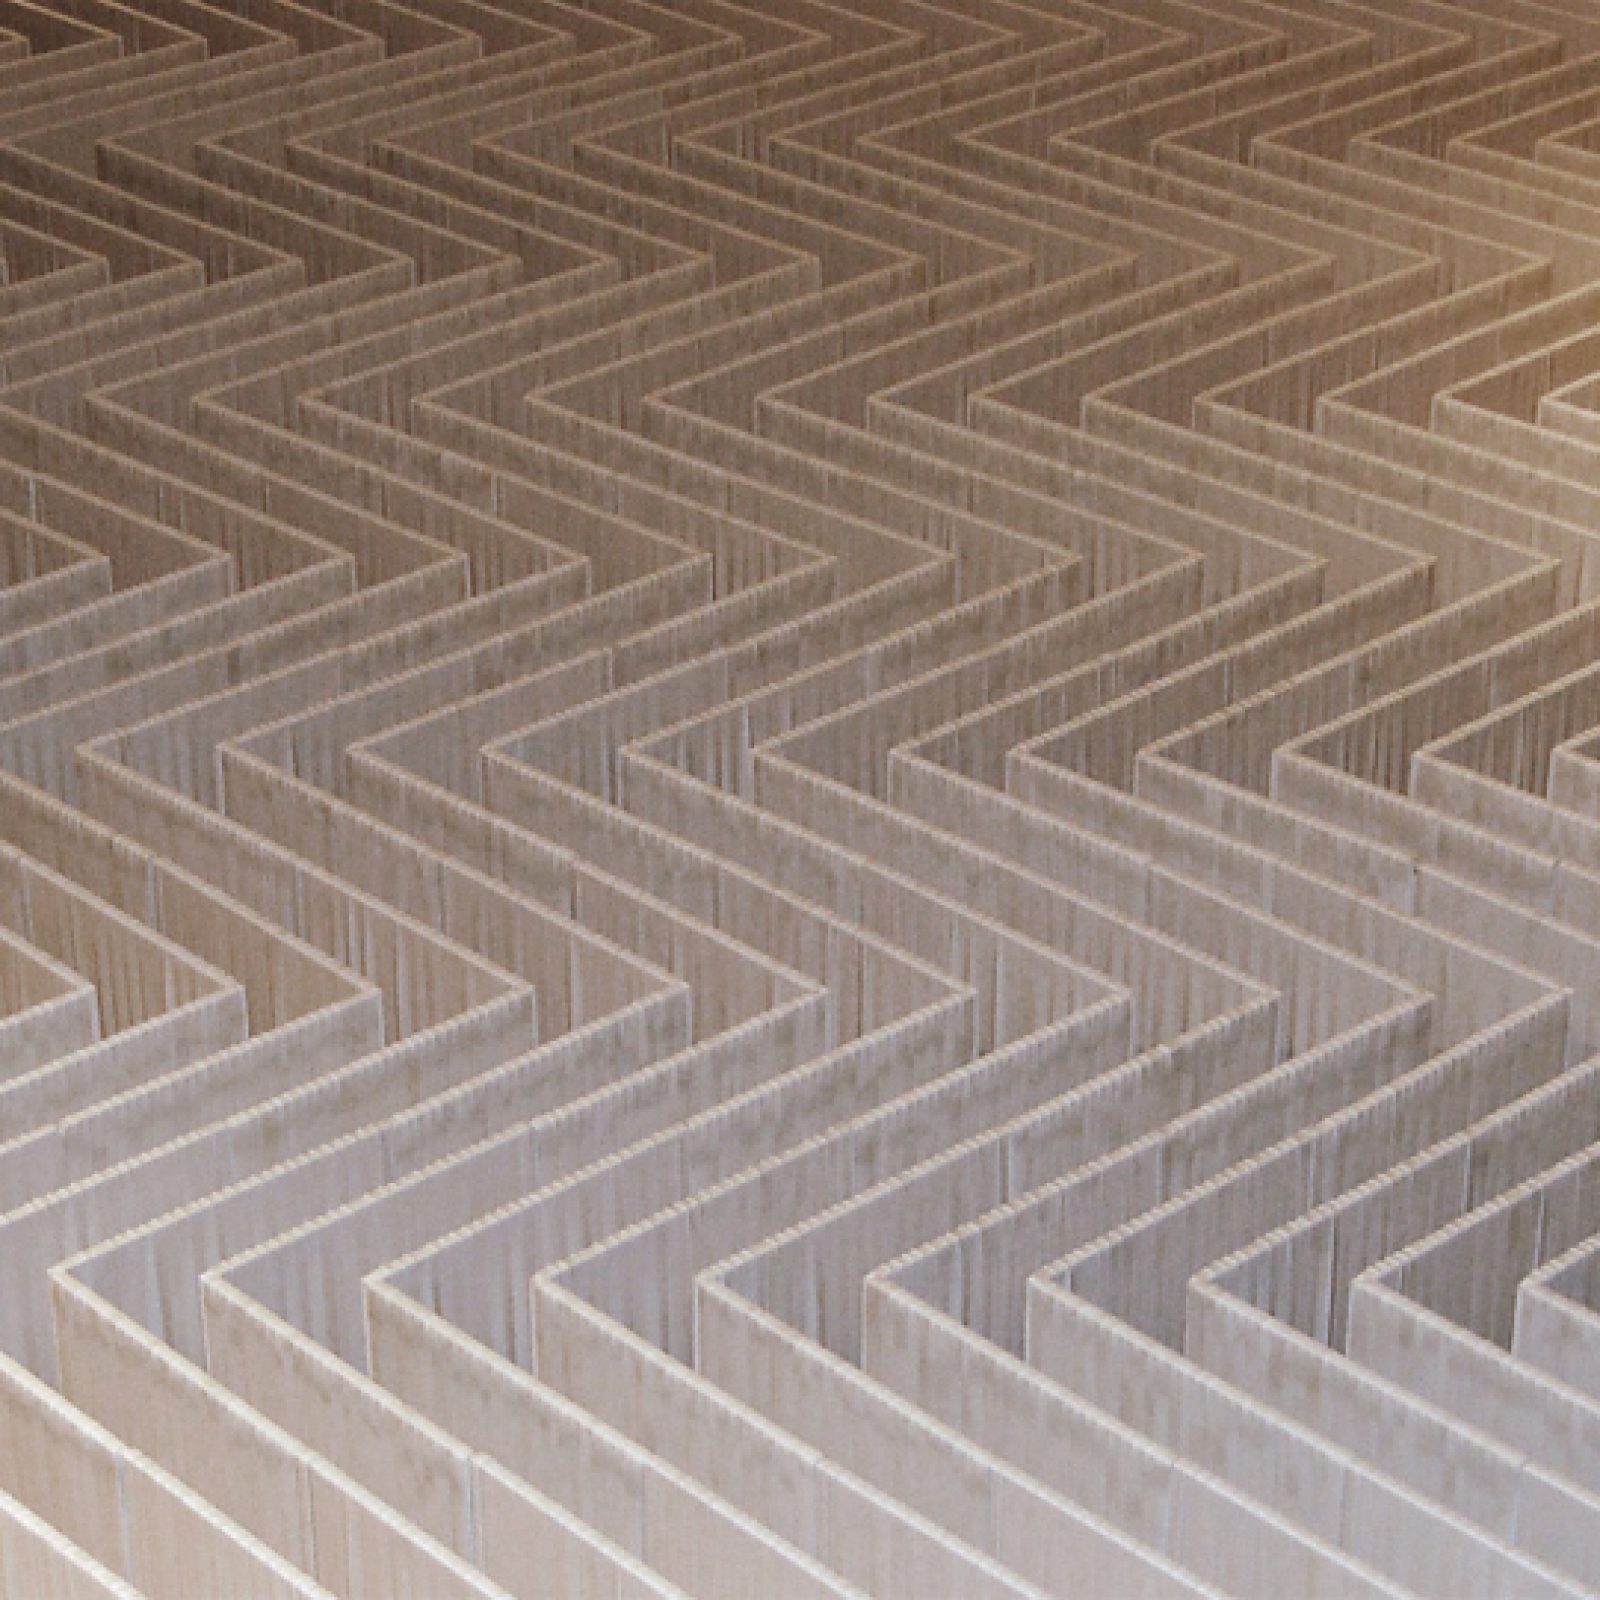 Bernardita Bertelsen, Volumetría Lineal, 2009. 400 módulos de madera cubiertos con elástico blanco. 350 x 250 x 20 cm. Sala de exhibición Universidad Finis Terrae, Santiago, Chile. Cortesía de la artista